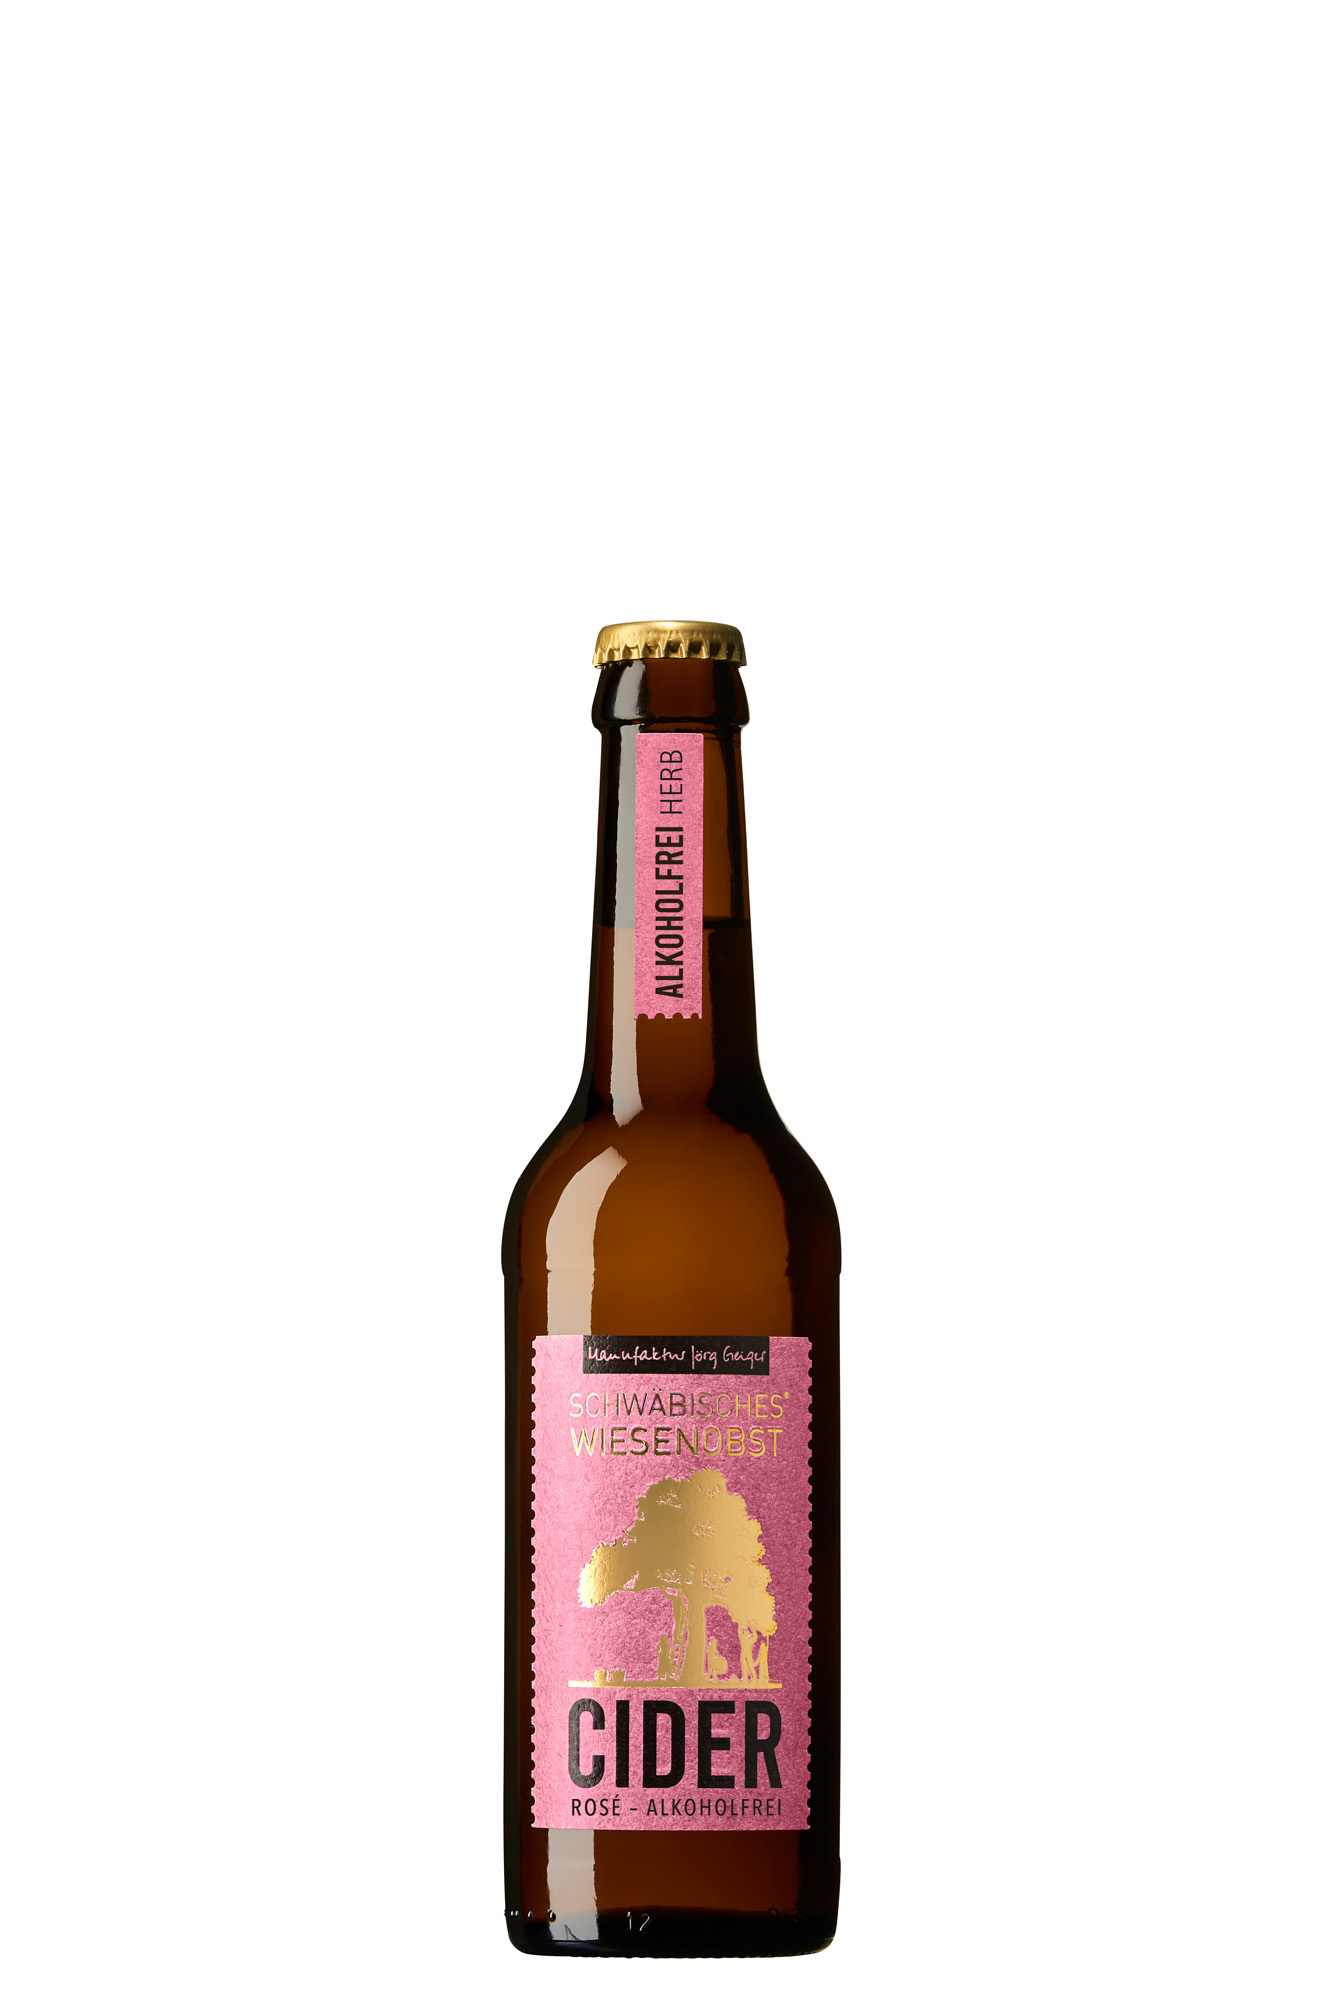 Wiesenobst - Cider Rosé - Alkoholfrei herb